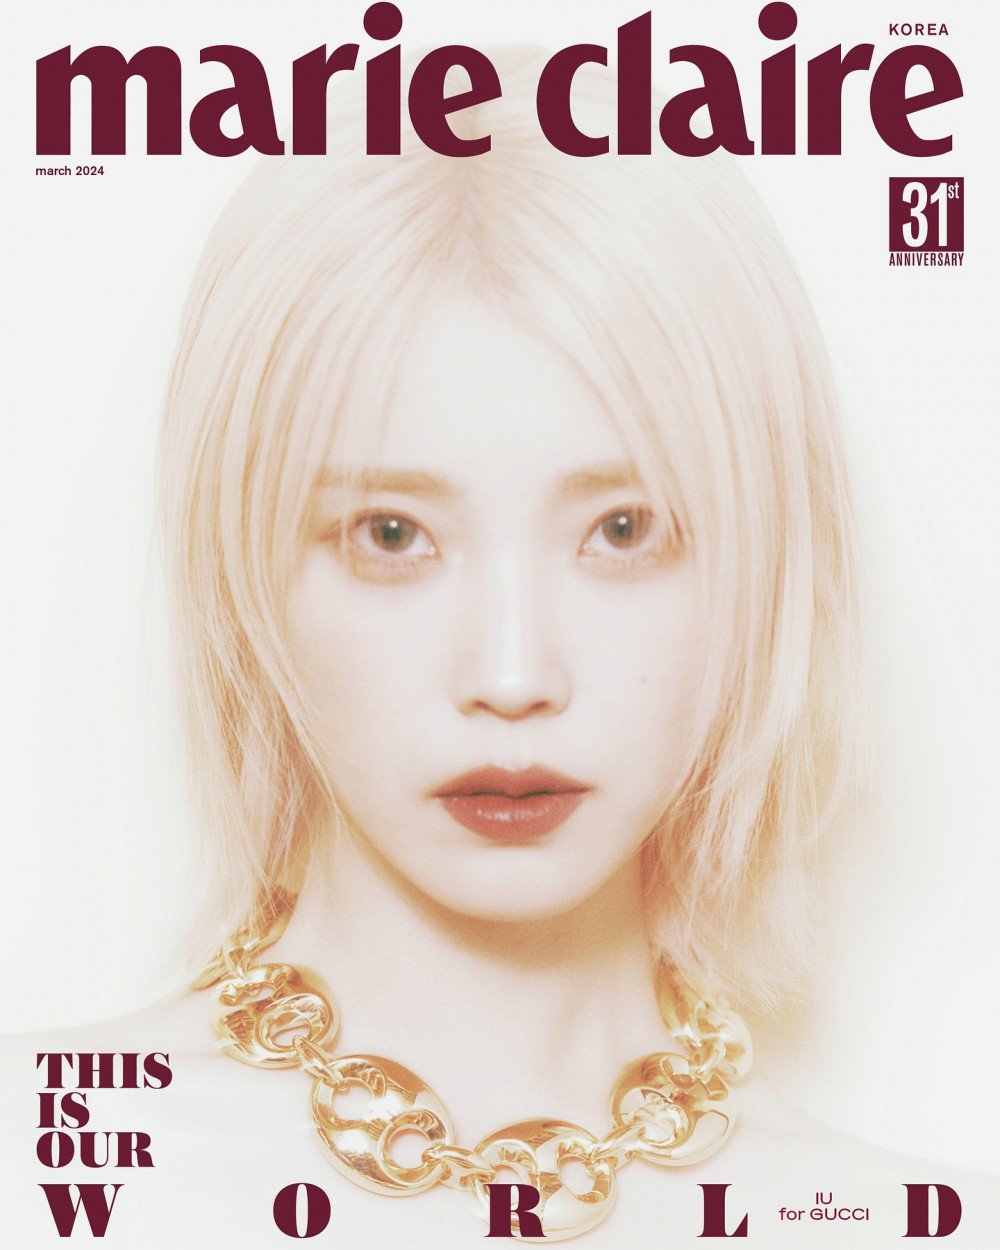 Загадочная АйЮ на обложке журнала Marie Claire